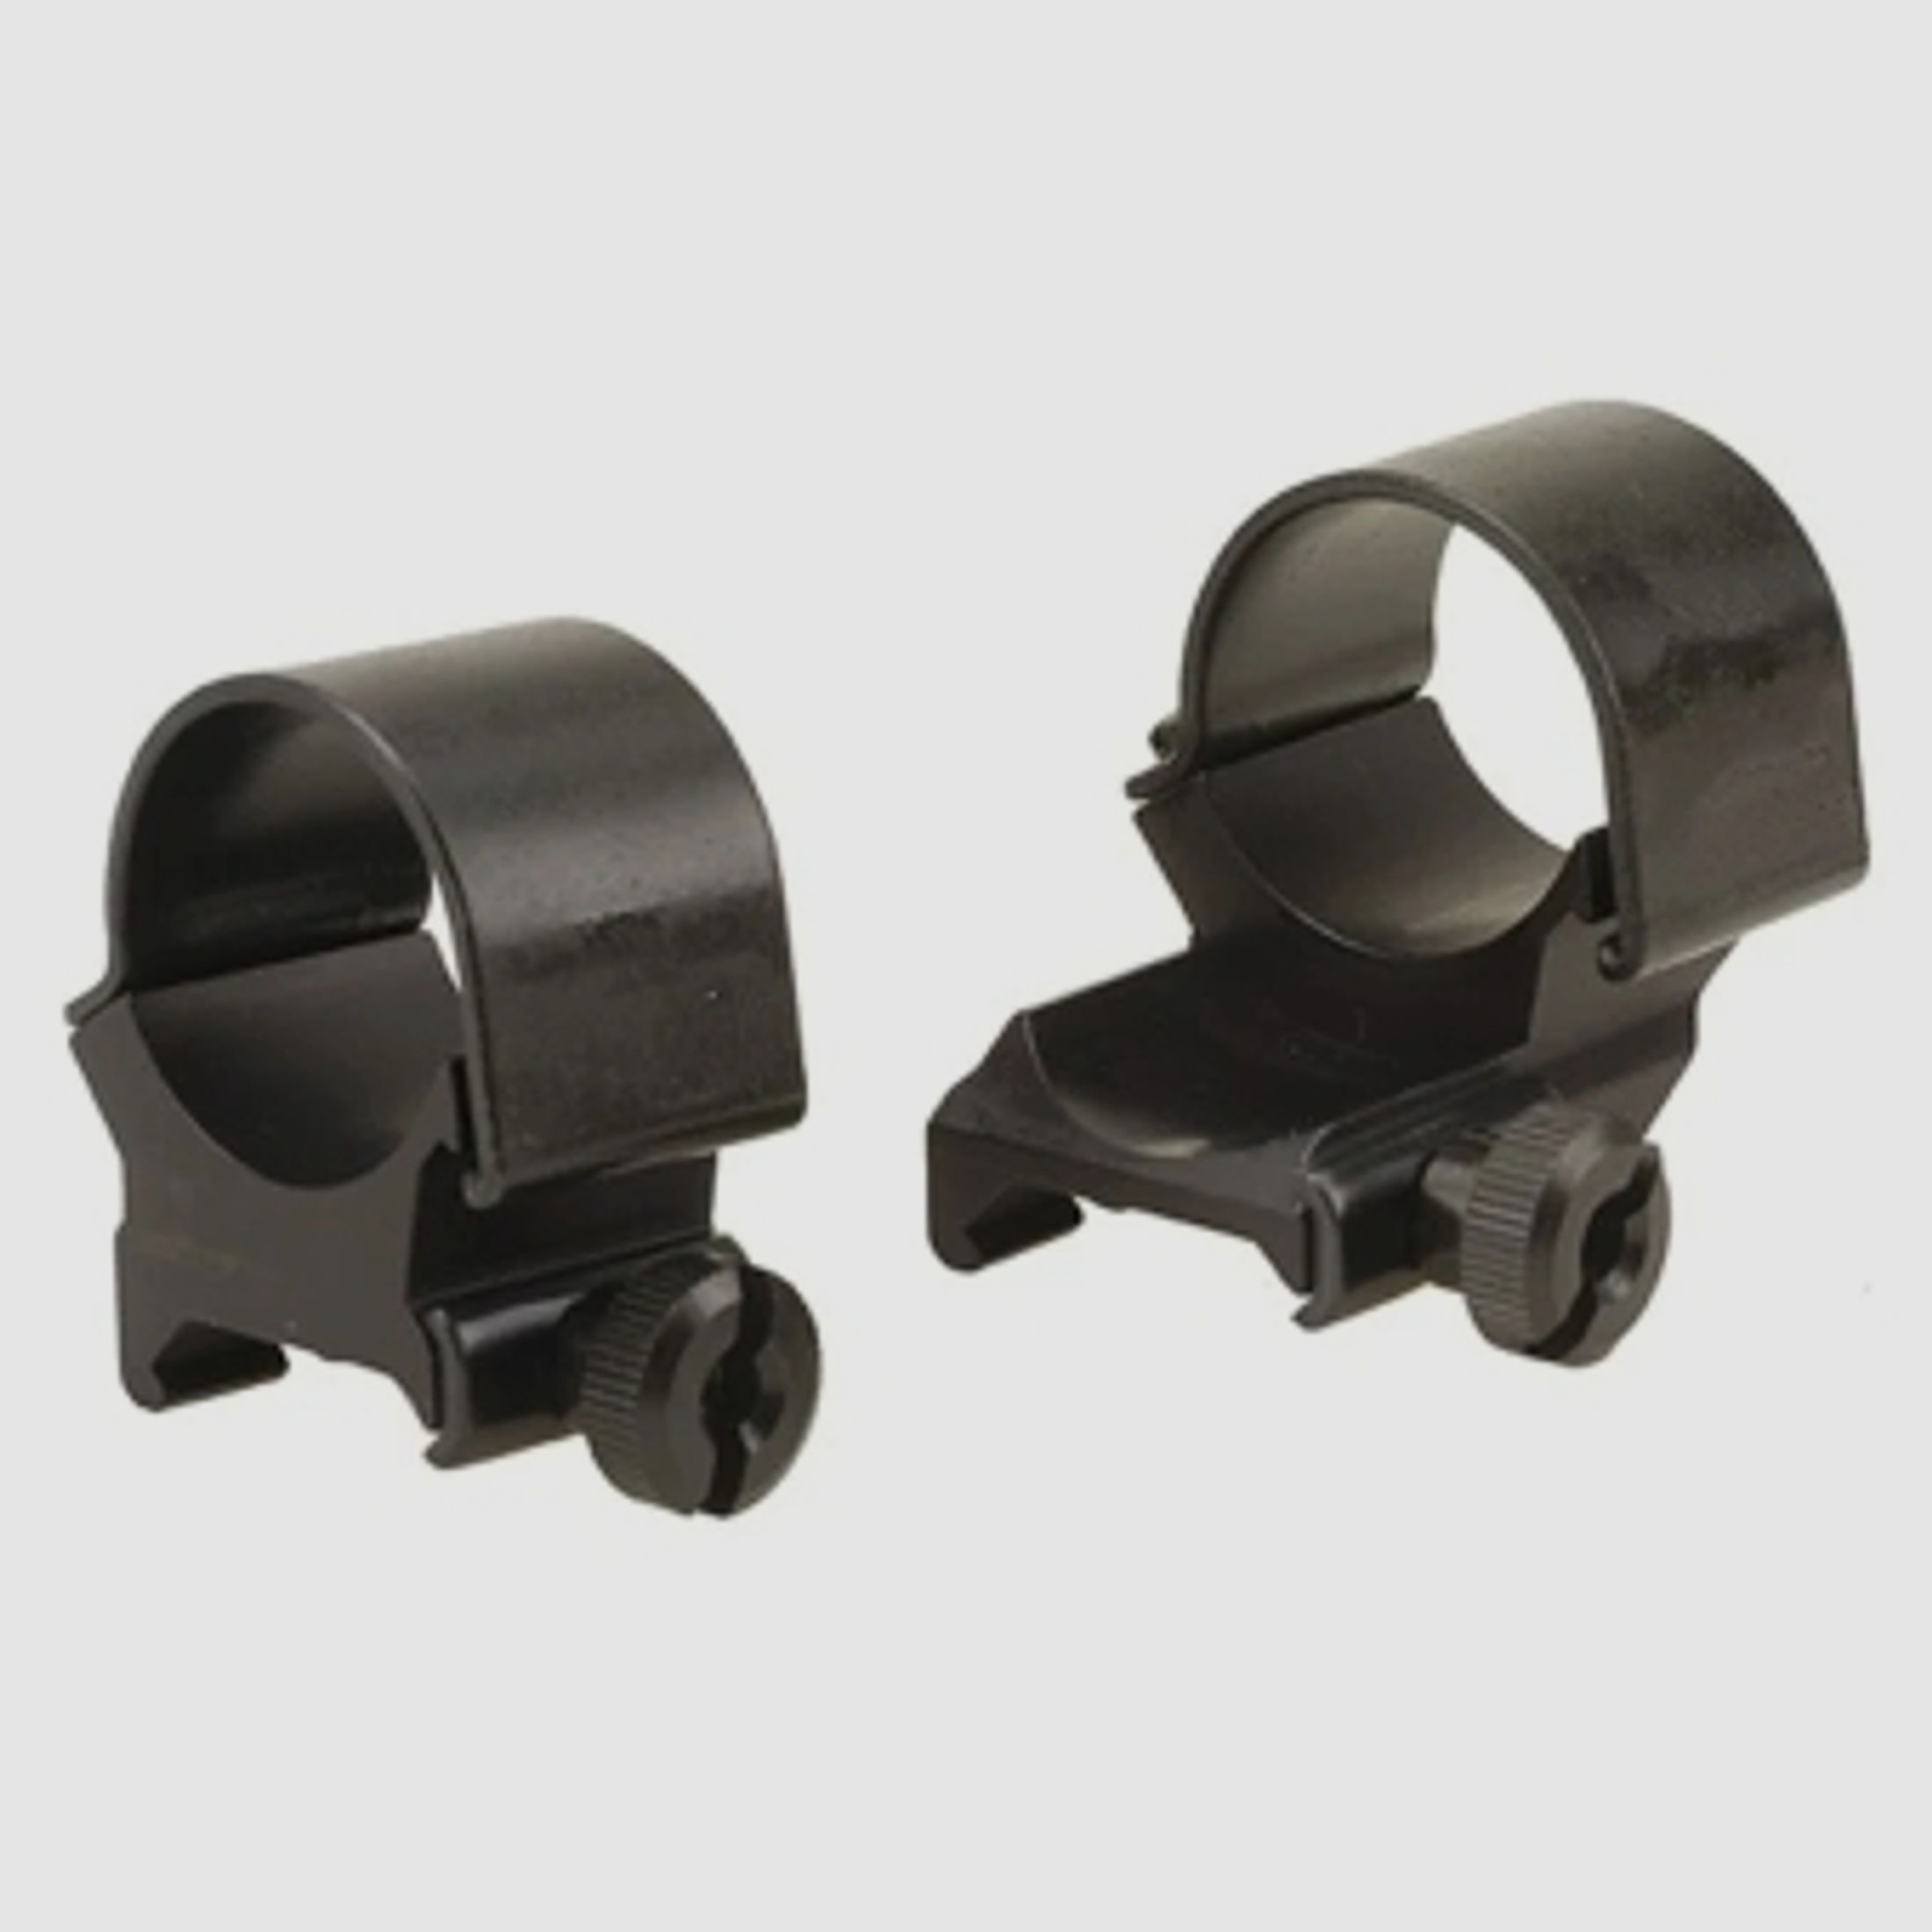 Weaver Top-Mount Weaver-Style Ringe (1 extended) matt schwarz 25,4mm high, BH 8,43mm